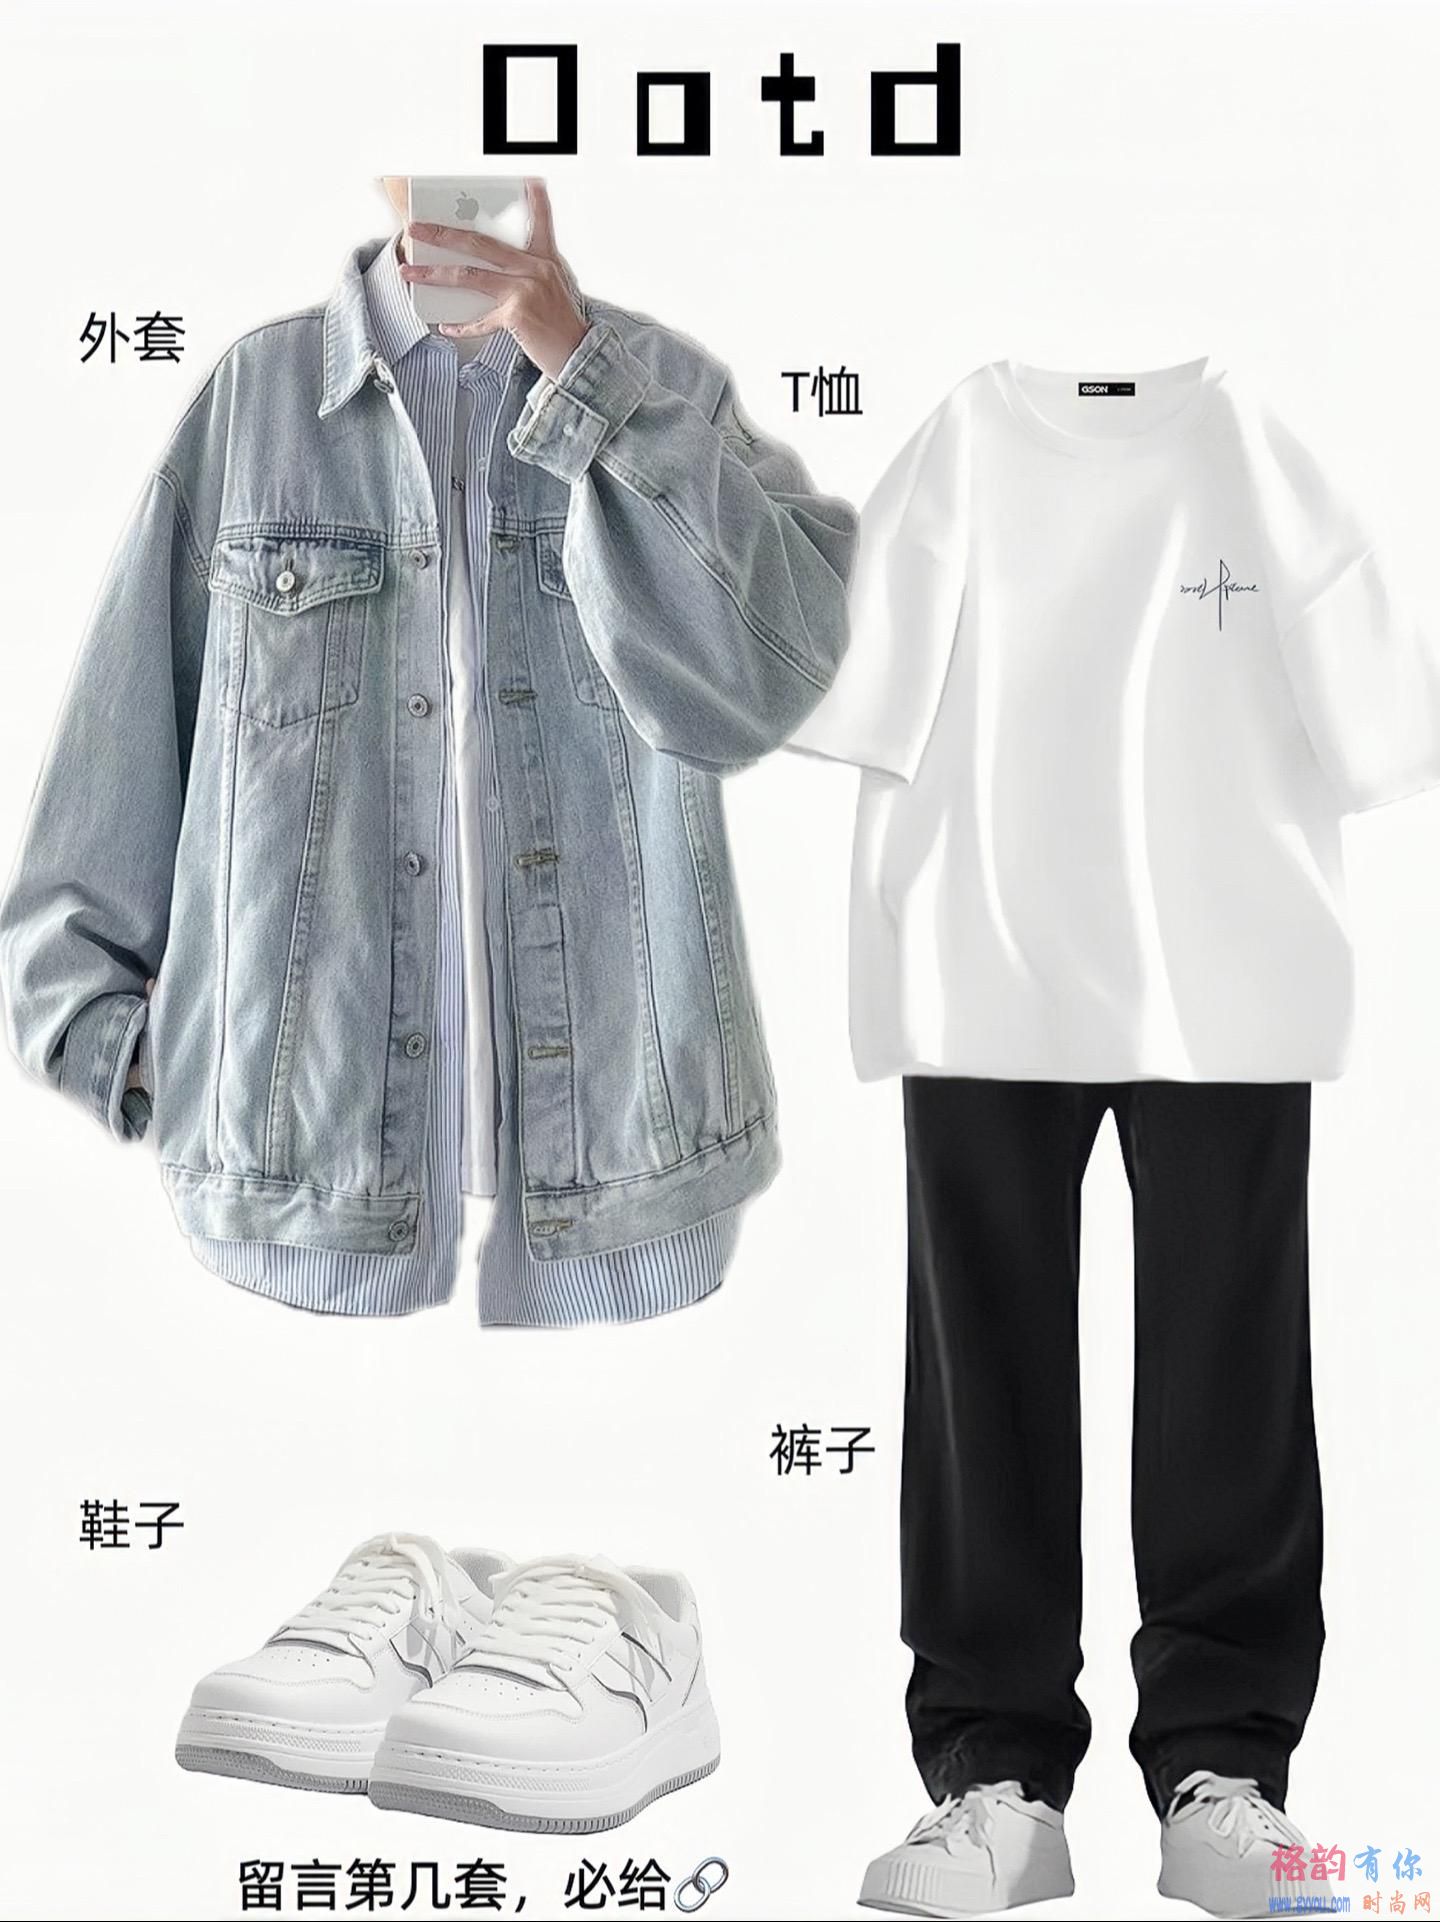 衣品是能够提升男生的气质的-格韵时尚网-www.gyyou.com